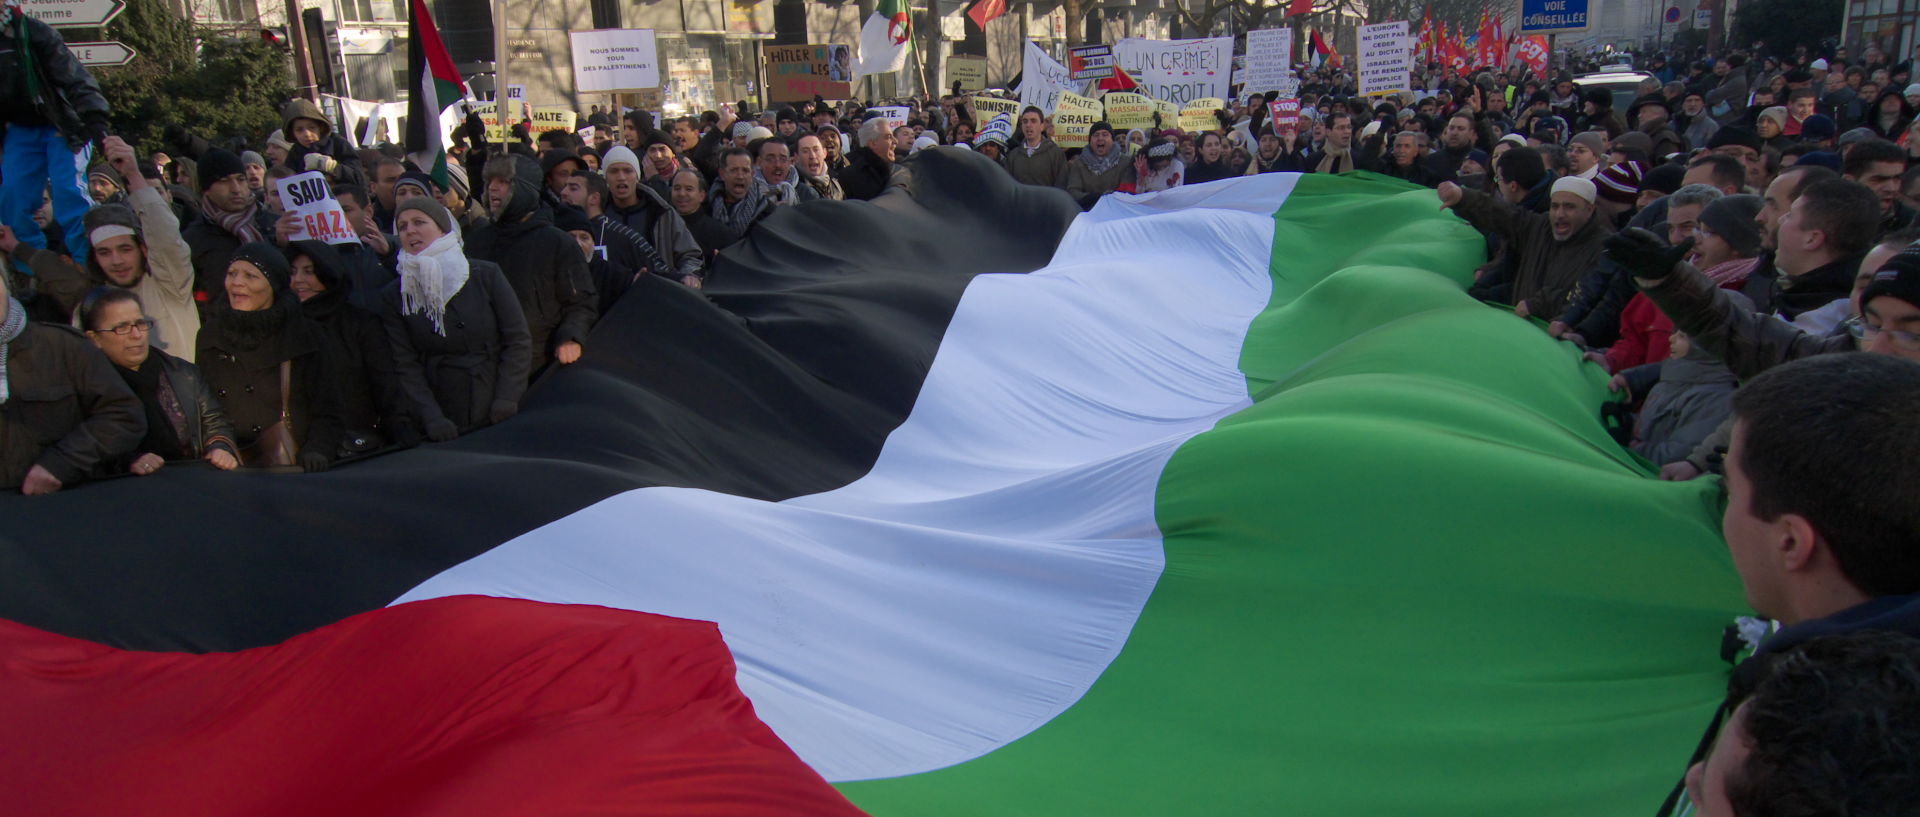 Samedi 10 janvier 2009, 14:58, manifestation pour la Palestine, rue de Paris, à Lille.